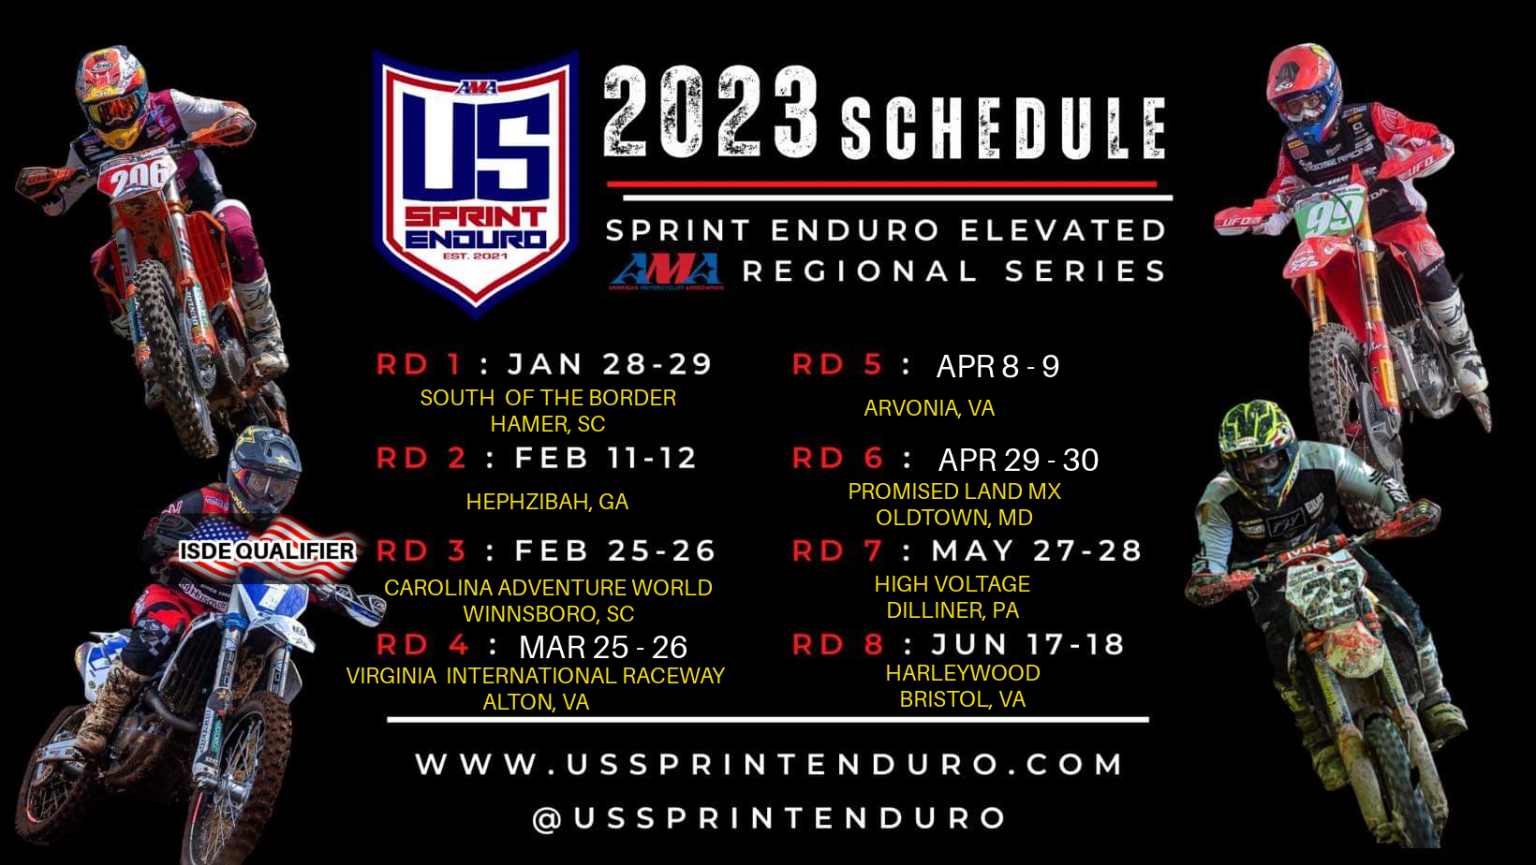 2023 Schedule Sprint Enduro Elevated